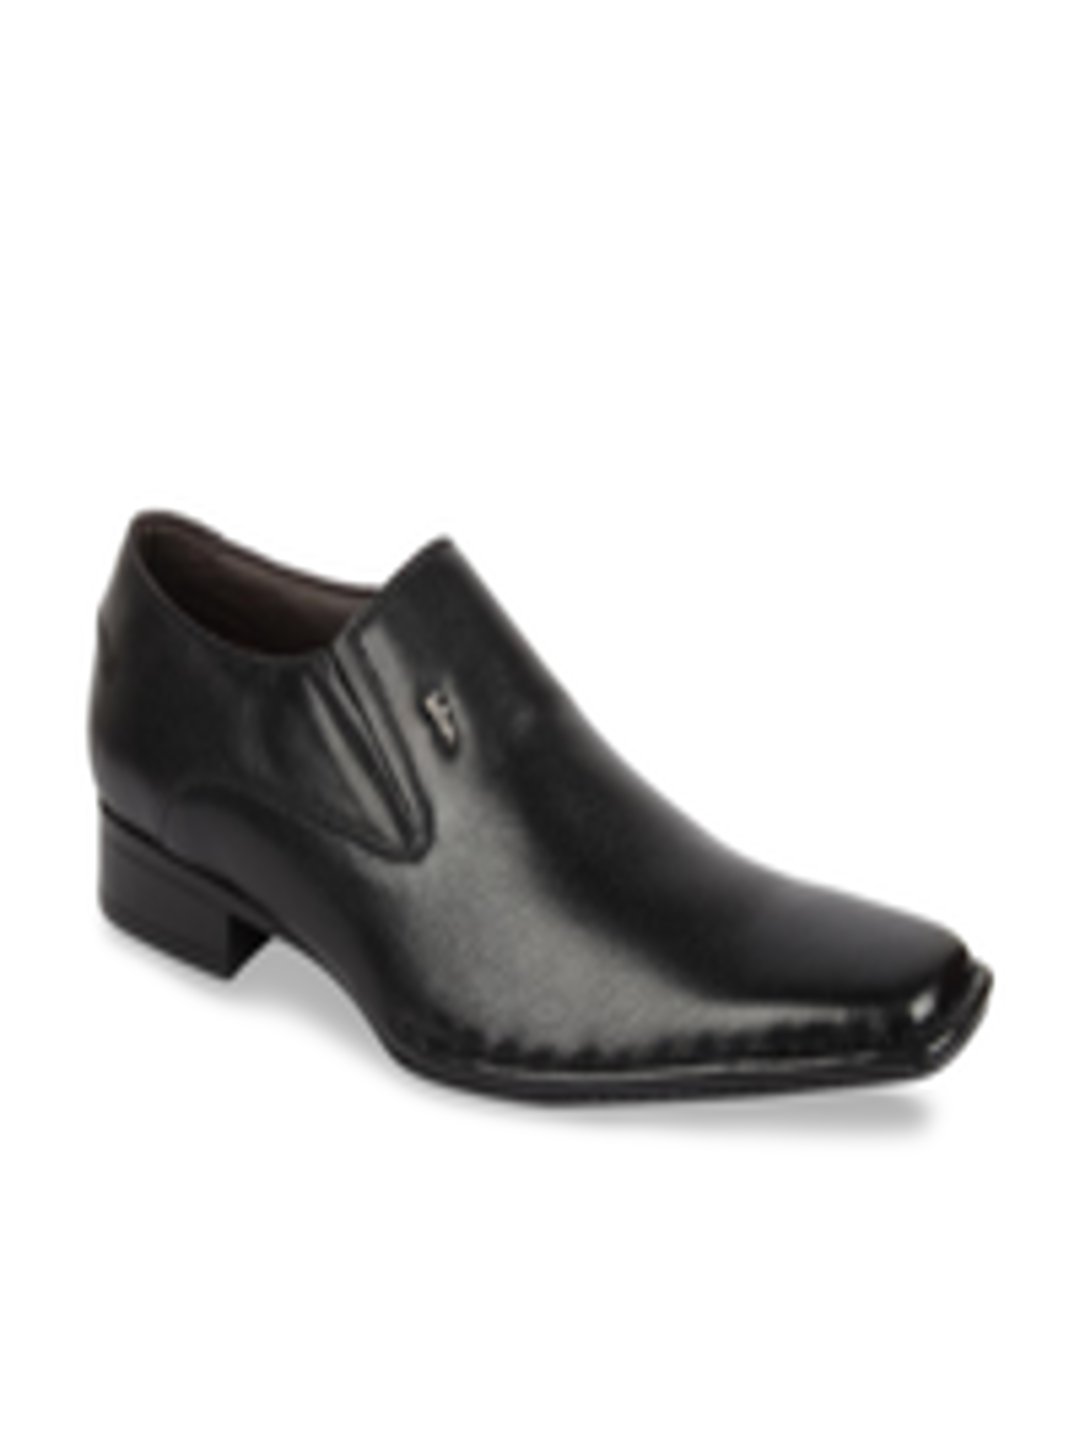 Buy Lee Cooper Men Black Formal Shoes - Formal Shoes for Men 10070777 ...